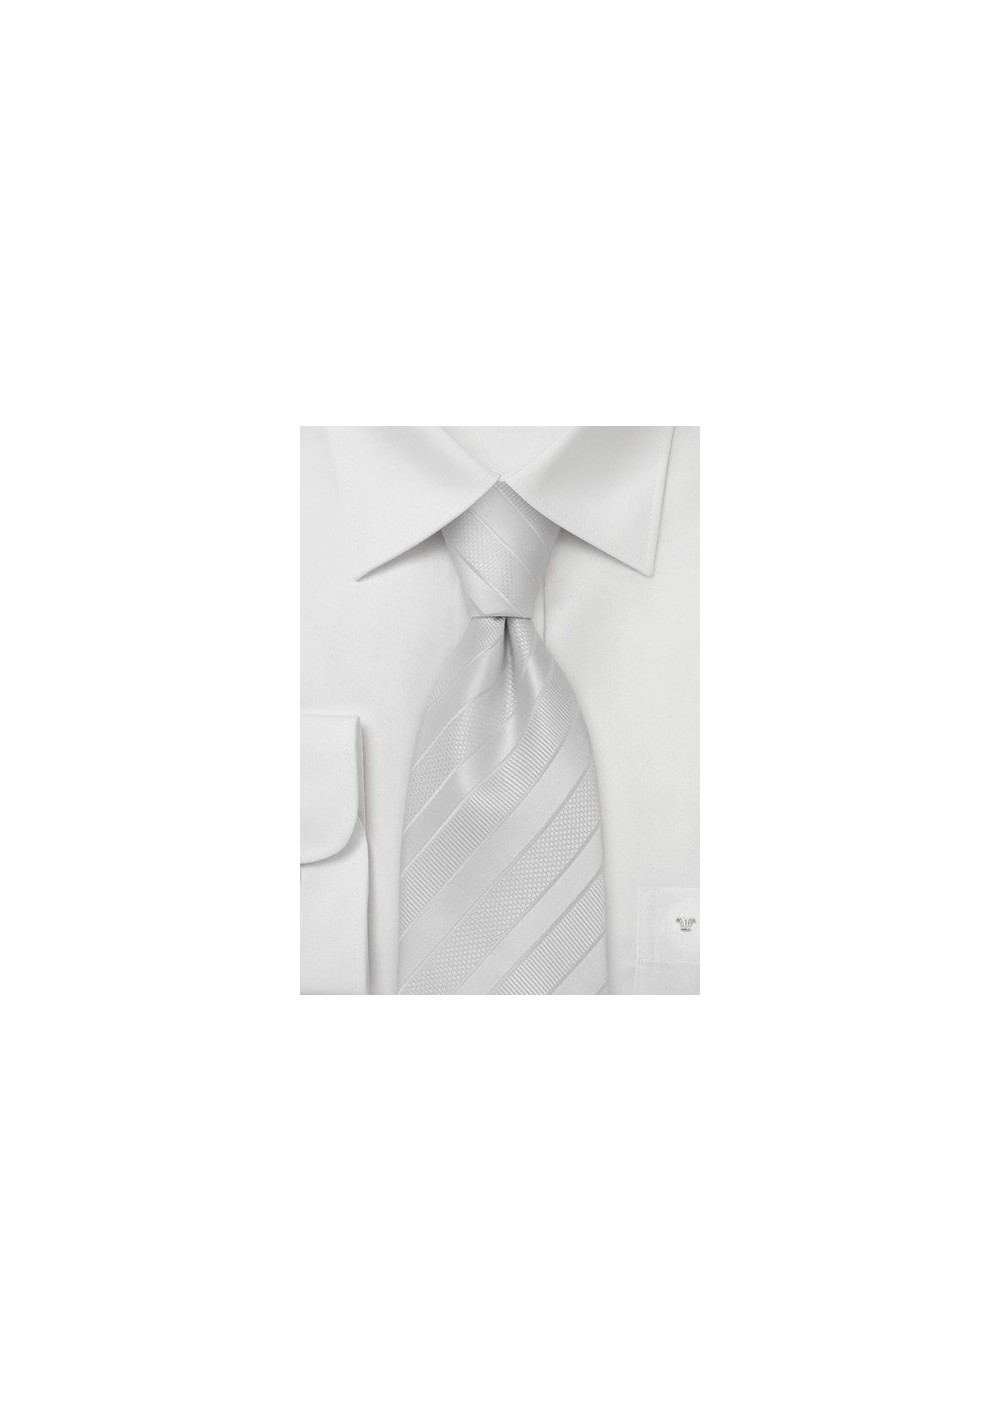 Festive Bright White Tie in XL